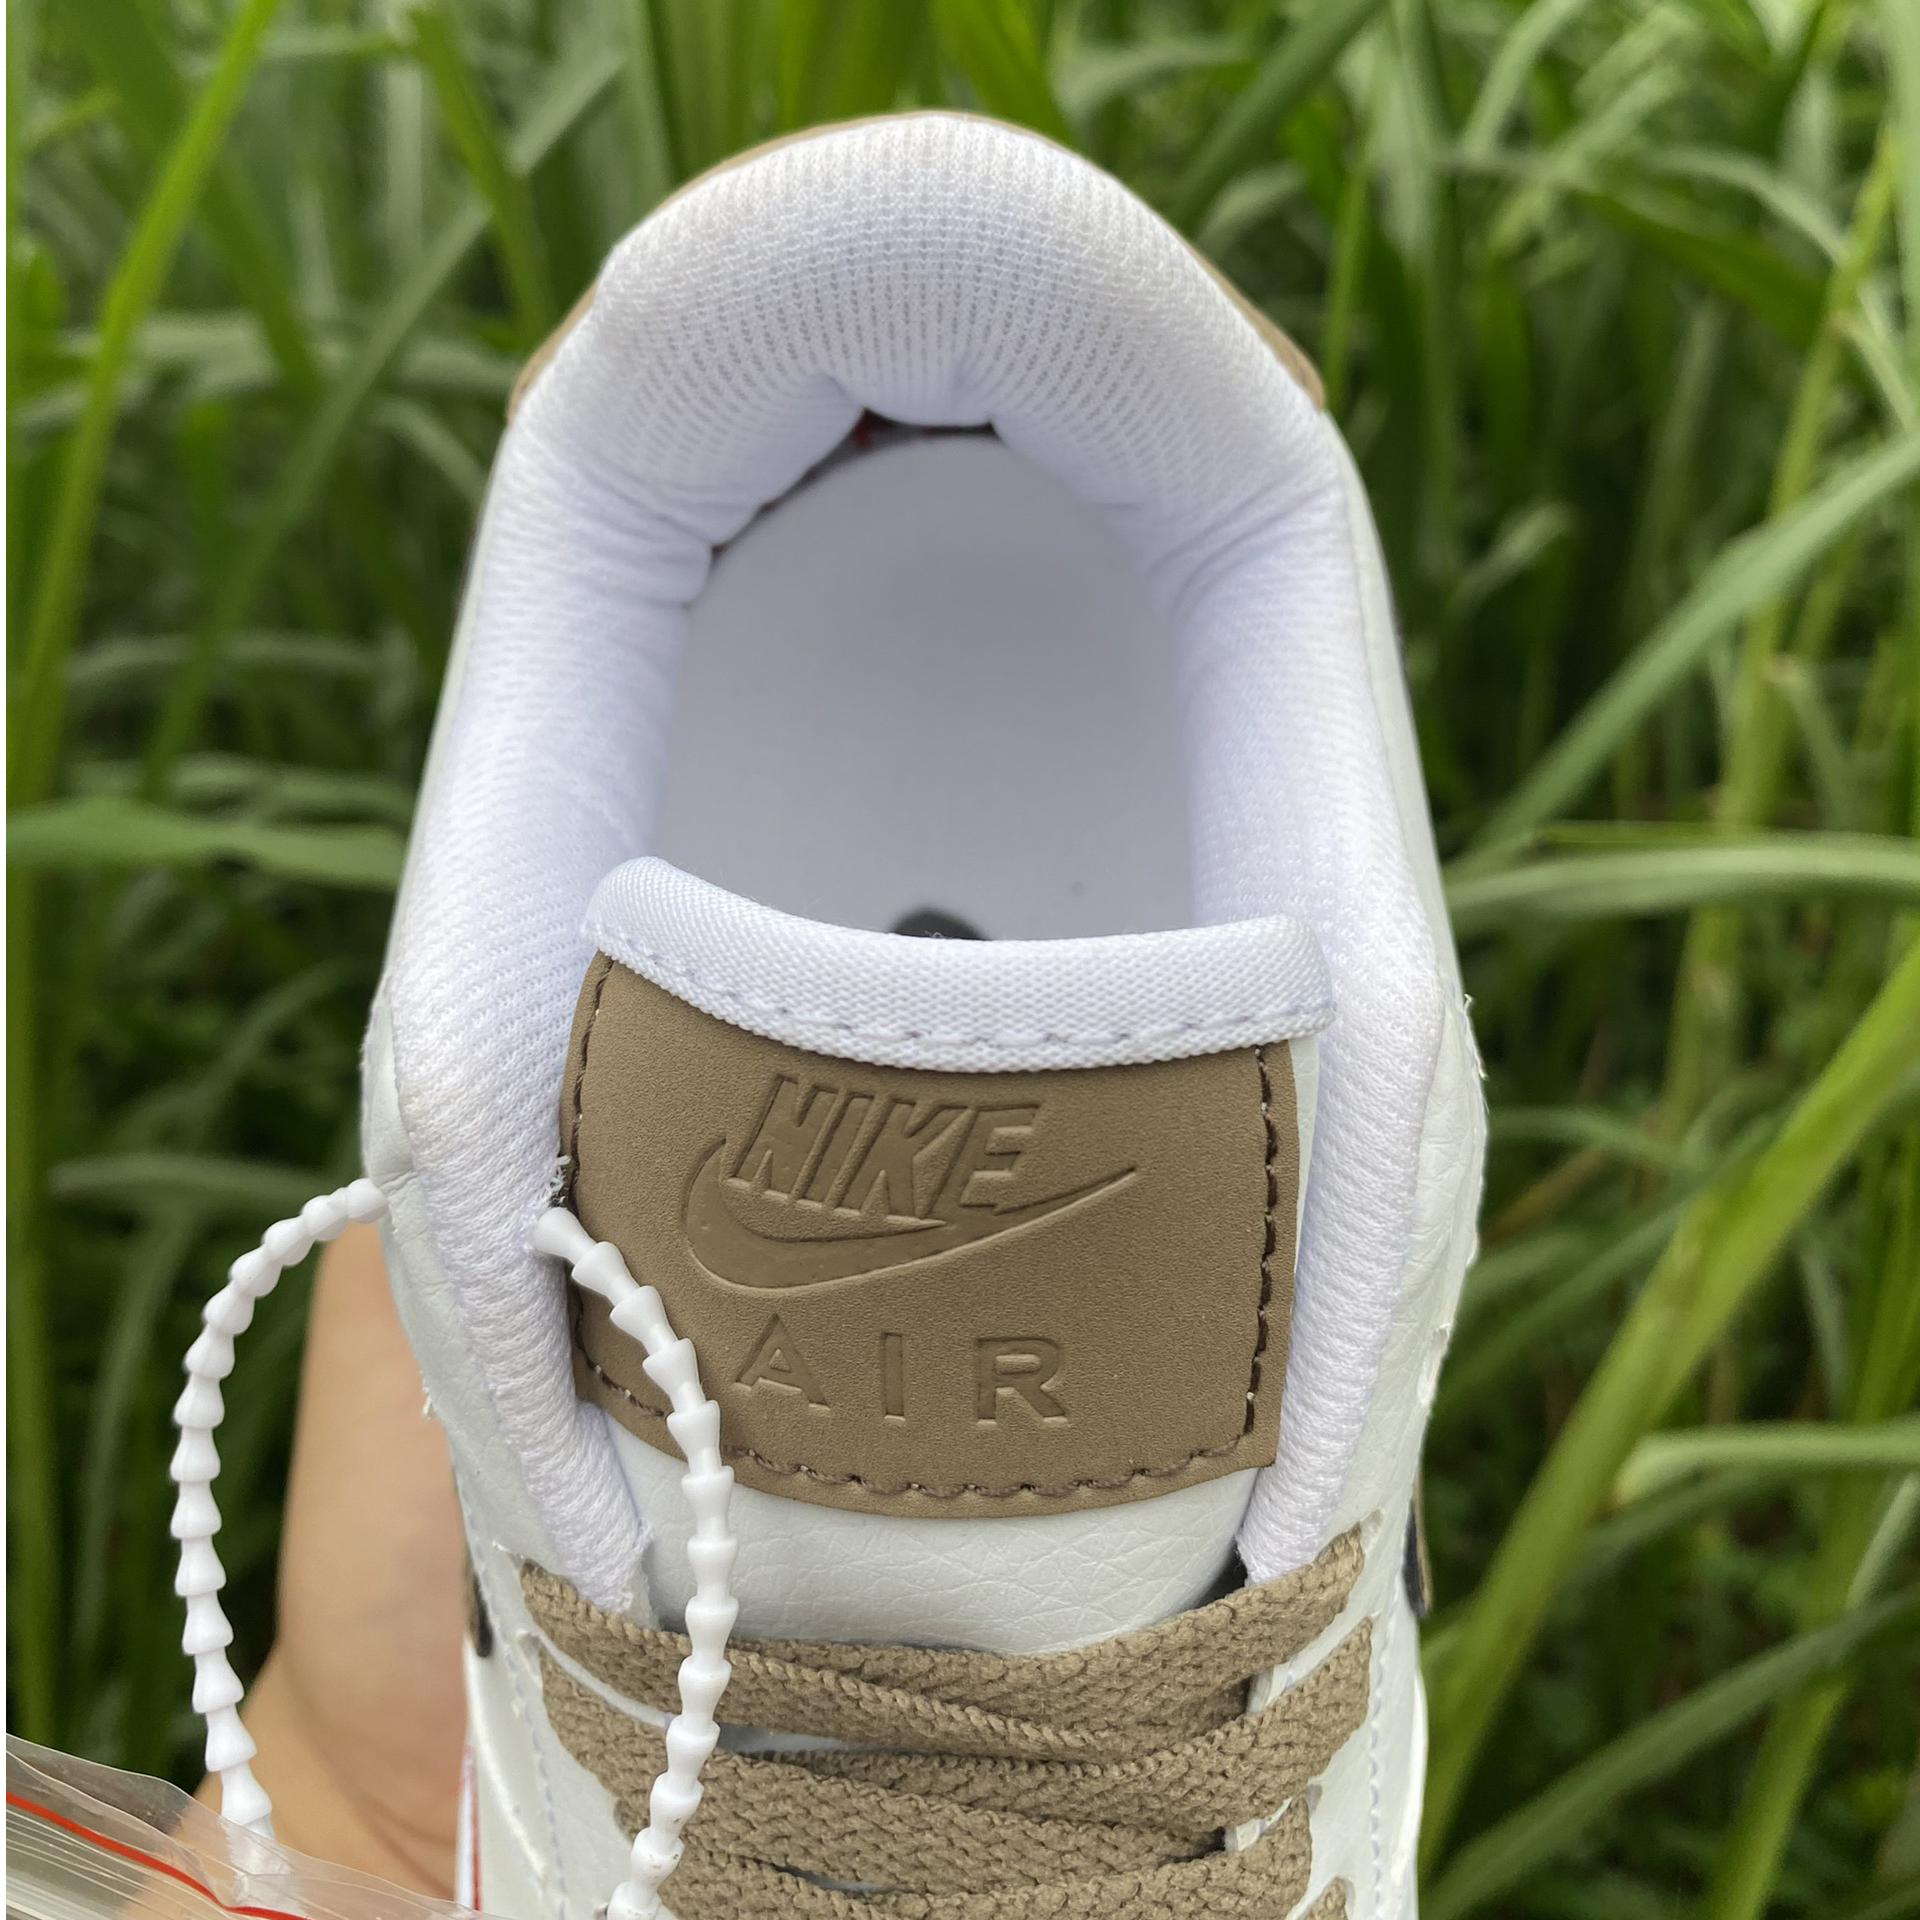 Giày thể thao Nike AF1 vệt nâu trắng, Giày Sneaker Nike AF1 white brown nam nữ đầy đủ Bill Box